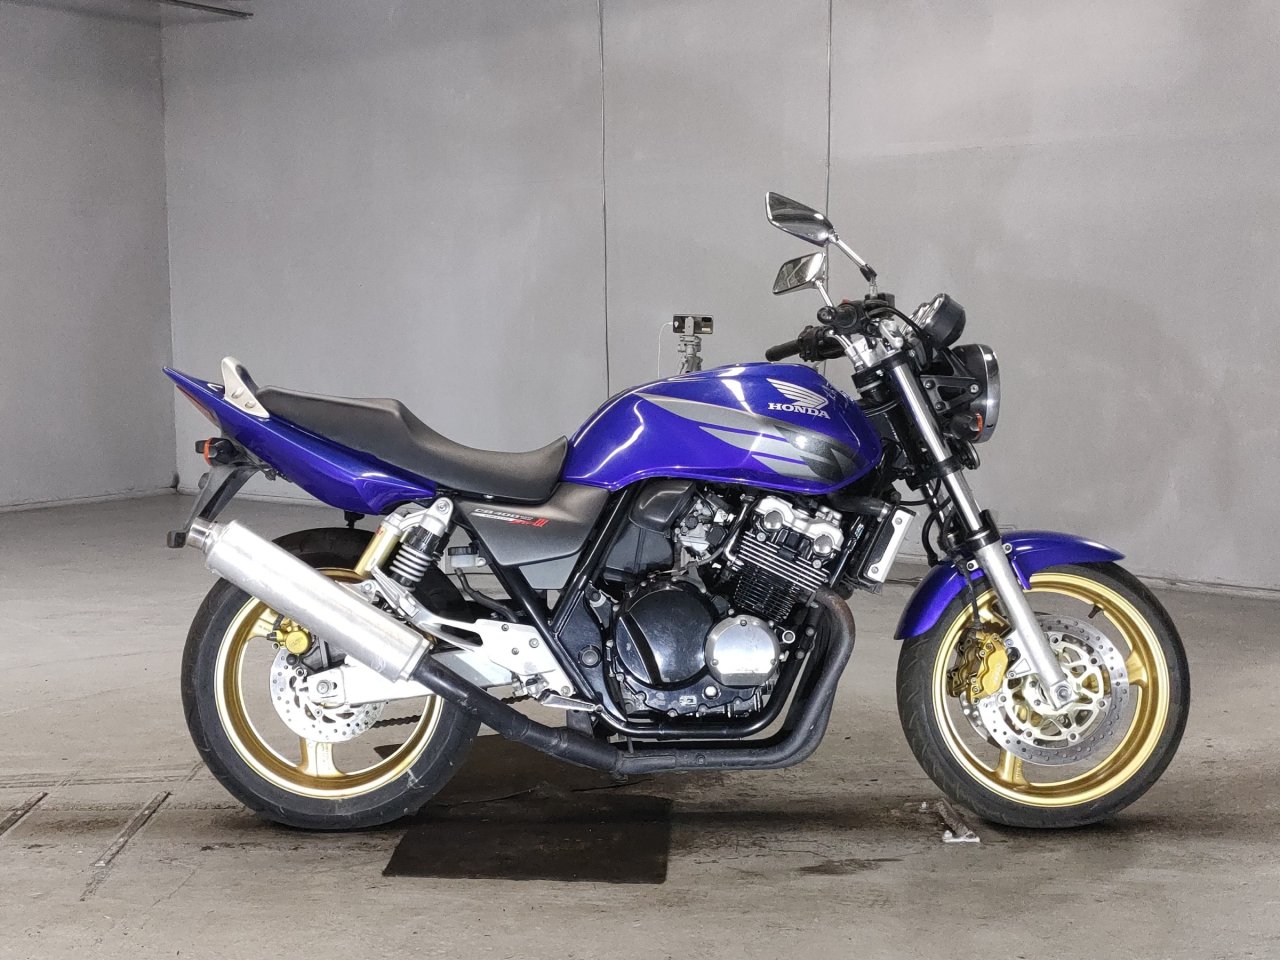 Honda CB400SF VTEC Spec 3 - Adamoto - Motorcycles from Japan